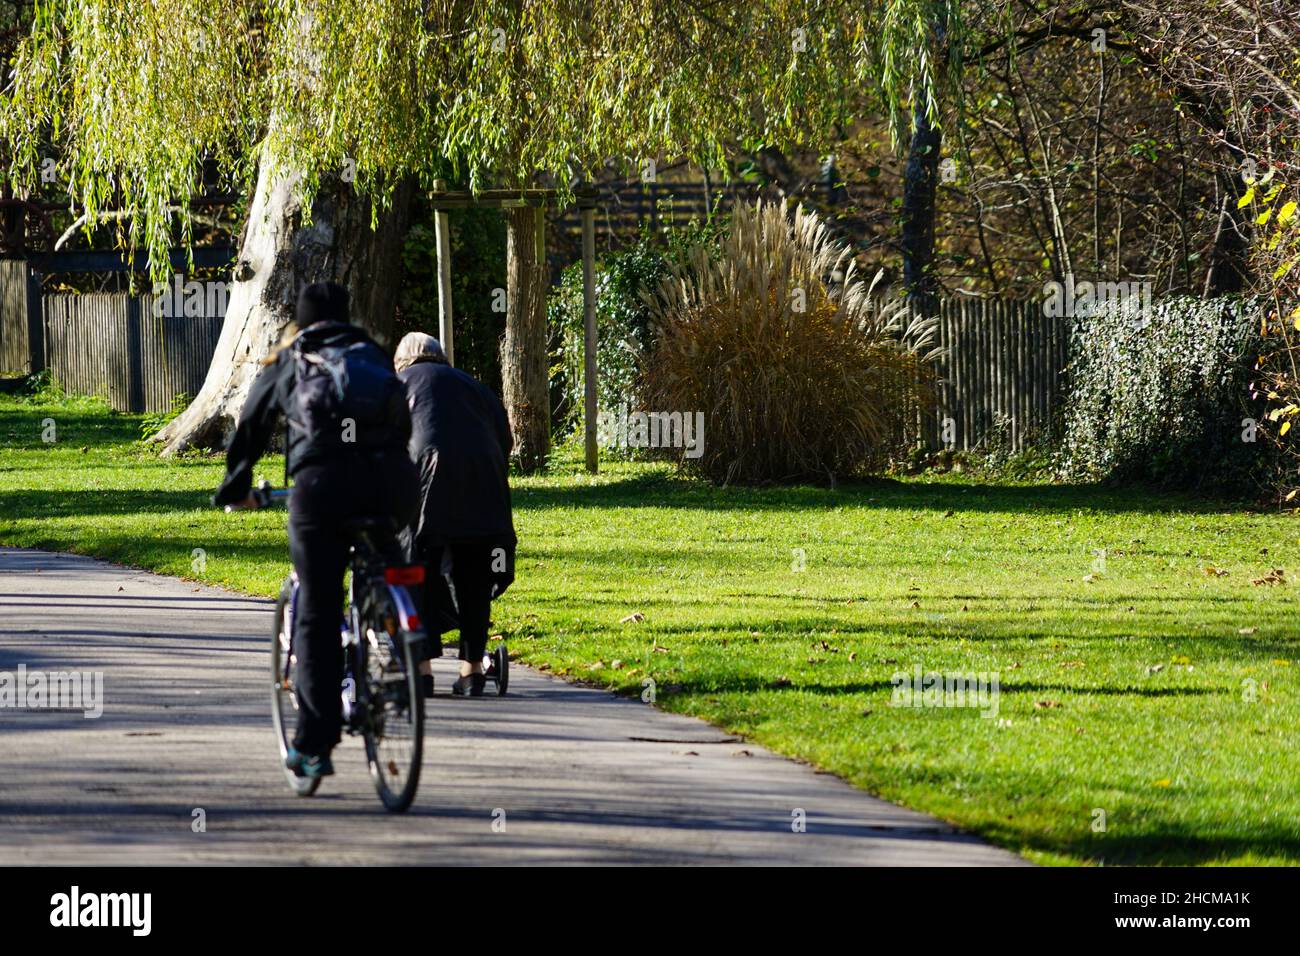 Eine ältere Dame in einem schwarzen Mantel geht auf einem Bürgersteig in einem Park und lehnt sich auf ihren Spaziergänger. Ein Radfahrer fährt an ihr vorbei. Stockfoto